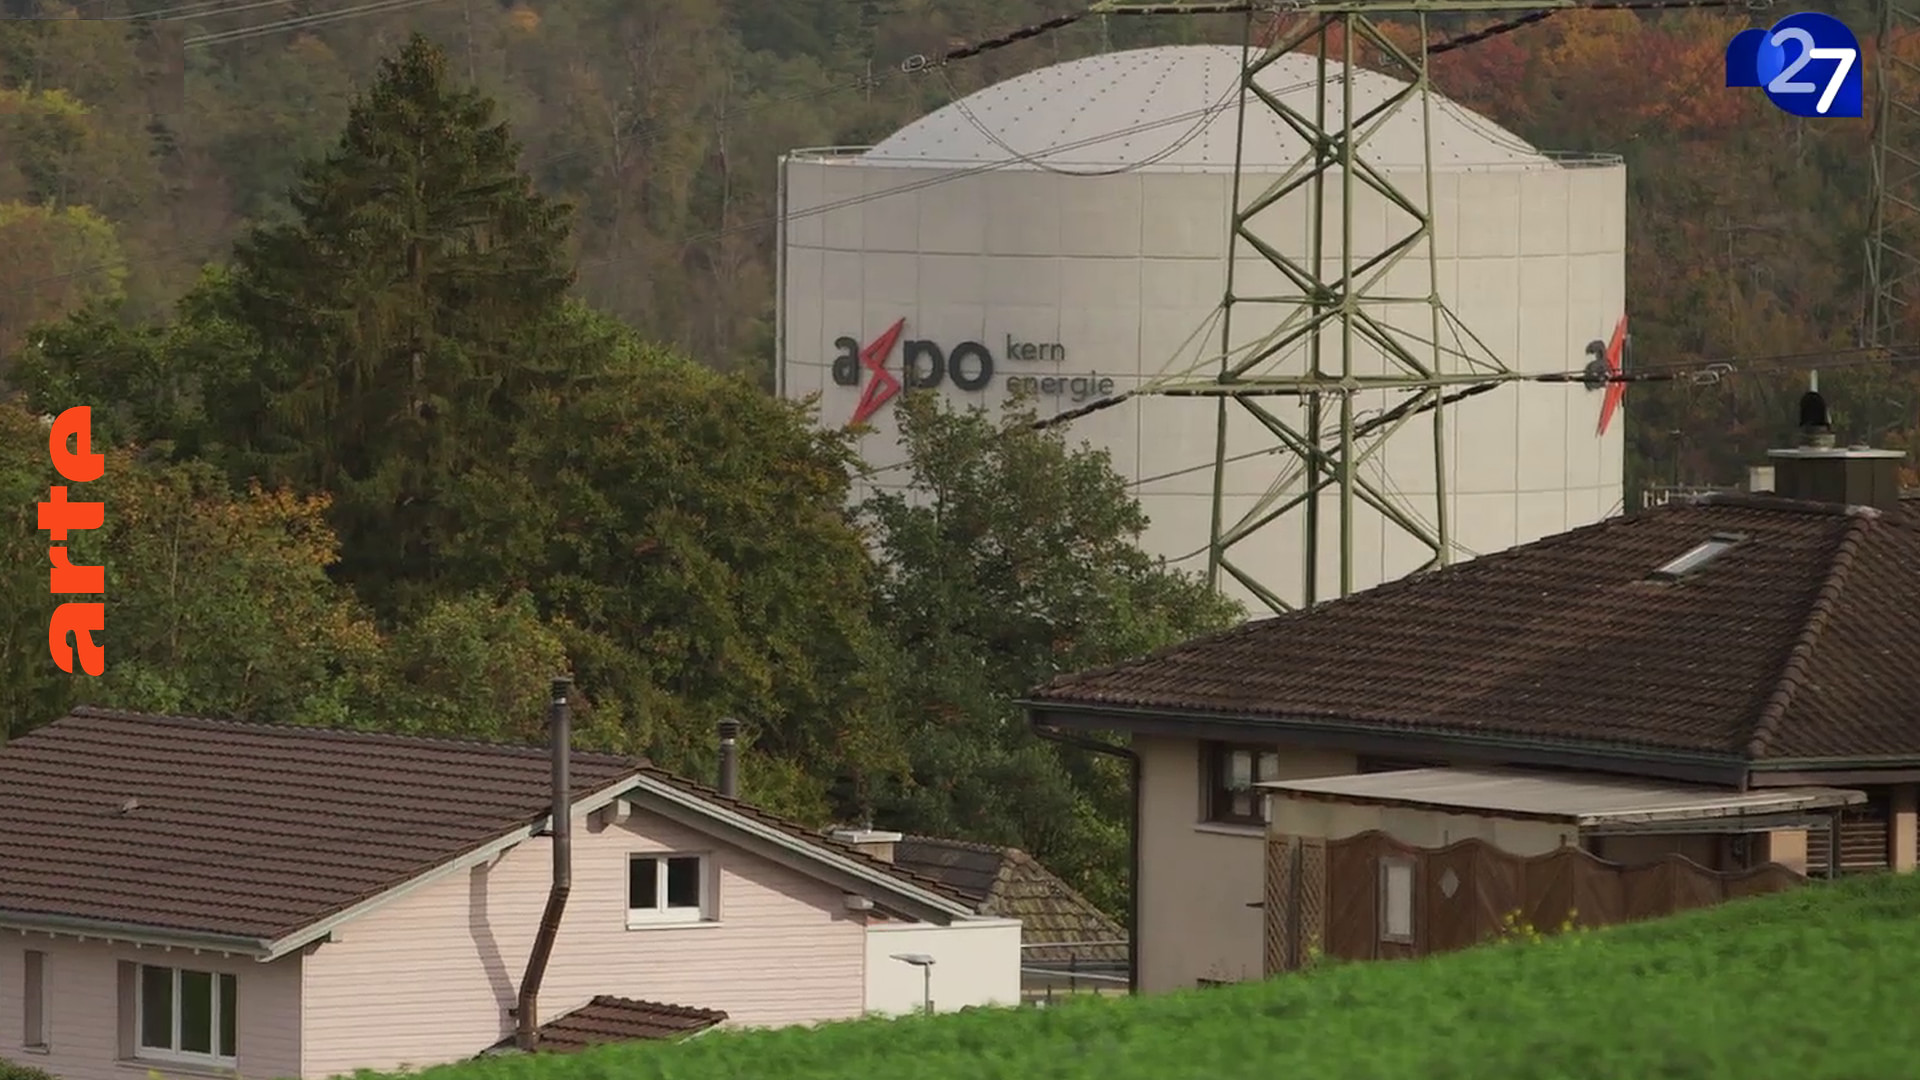 Kernkraftwerk Beznau: ein beunruhigender Nachbar...